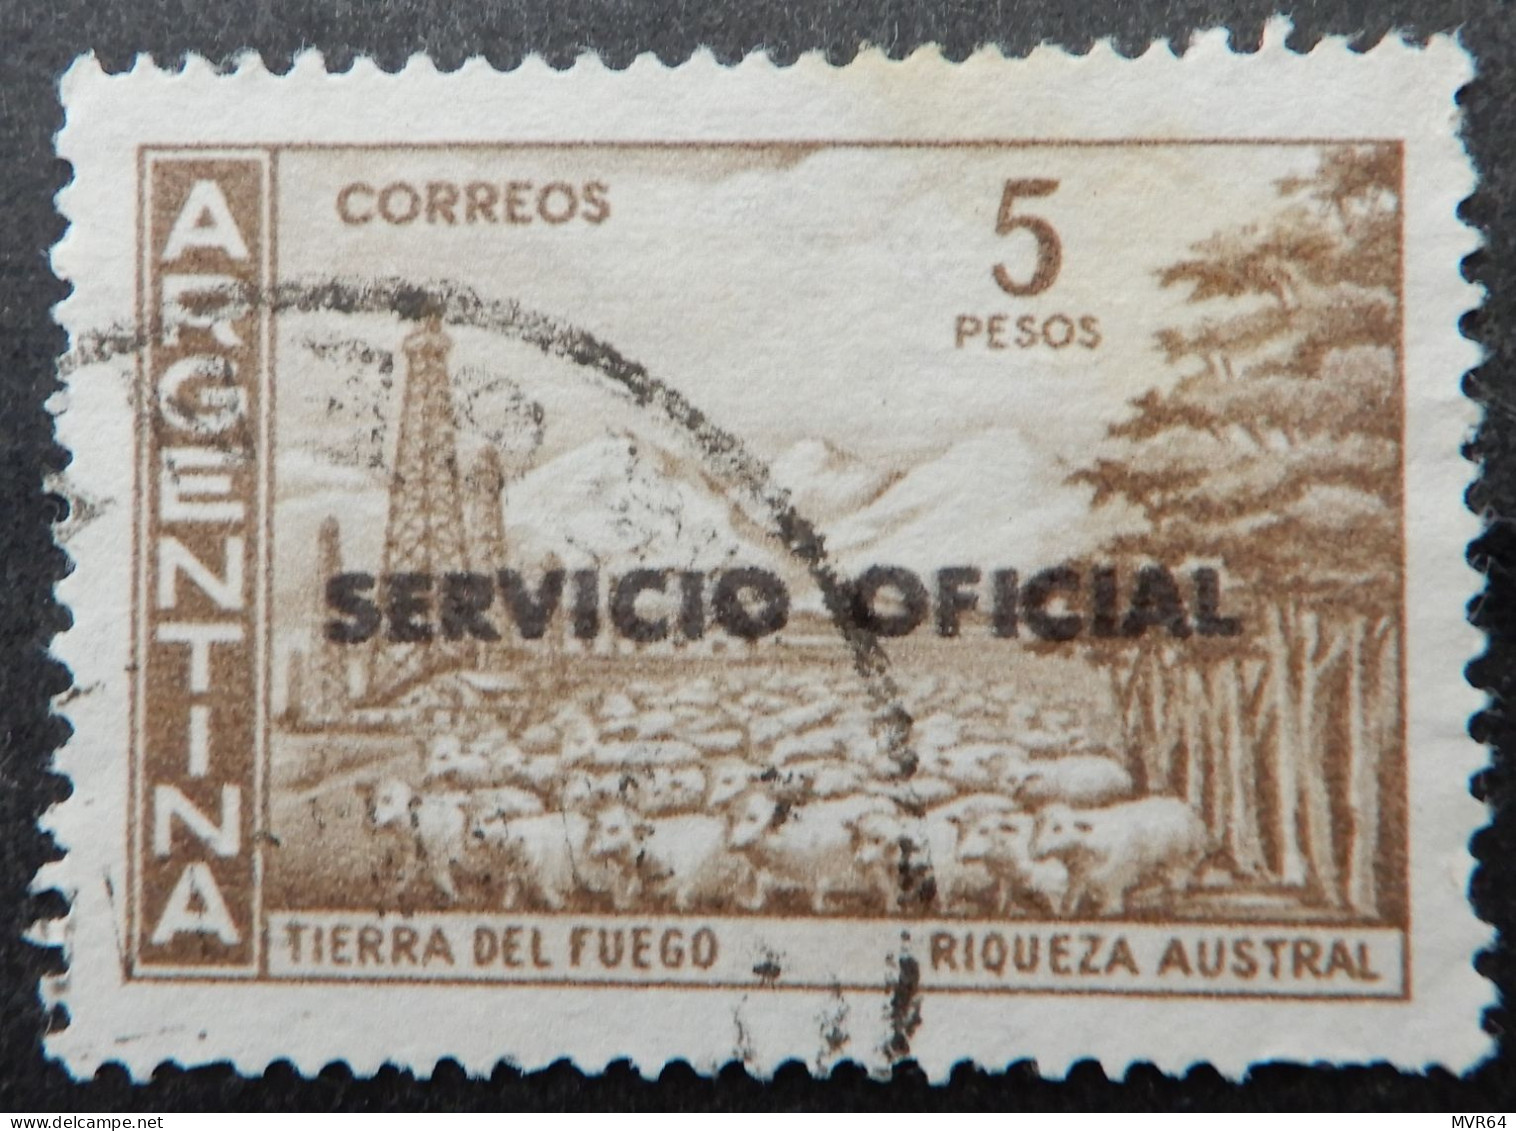 Argentinië Argentinia A 1959 (1) Tierra Del Fuego Riqueza Austral - Oblitérés